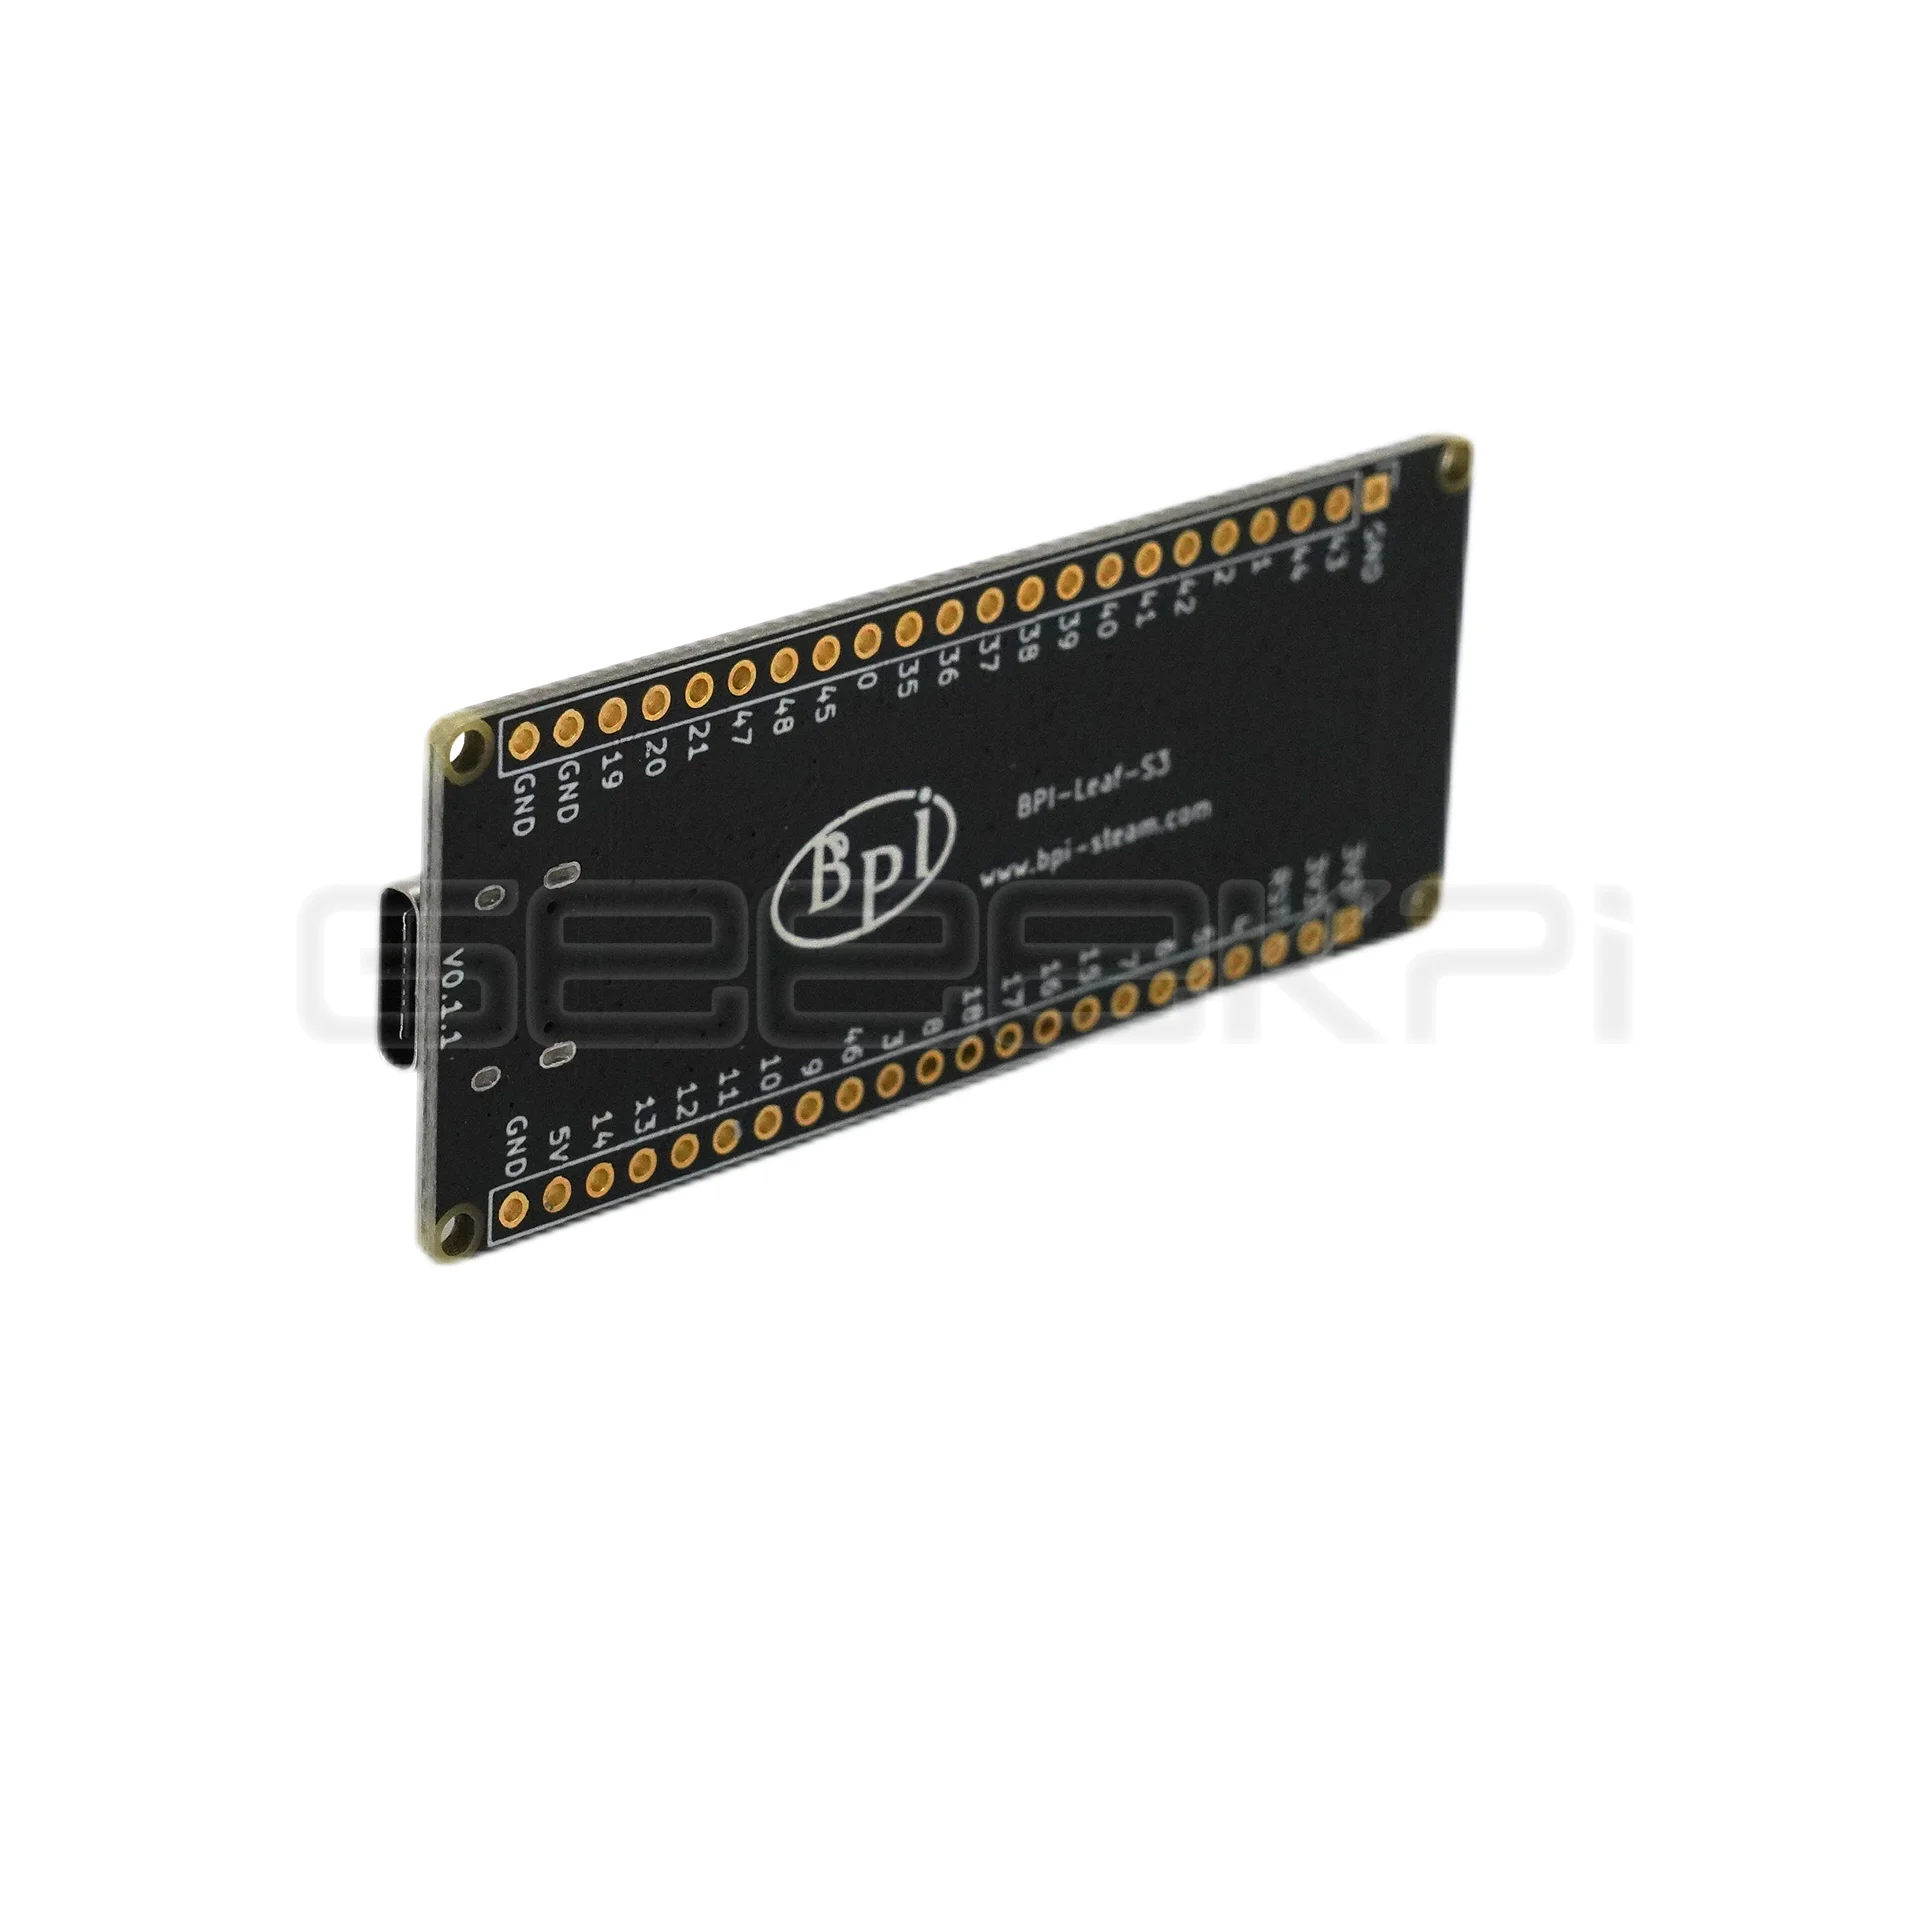 Originalna serija snage mikrokontrolera Banana Pi Leaf ESP32 S3, namijenjen za razvoj IoT 1